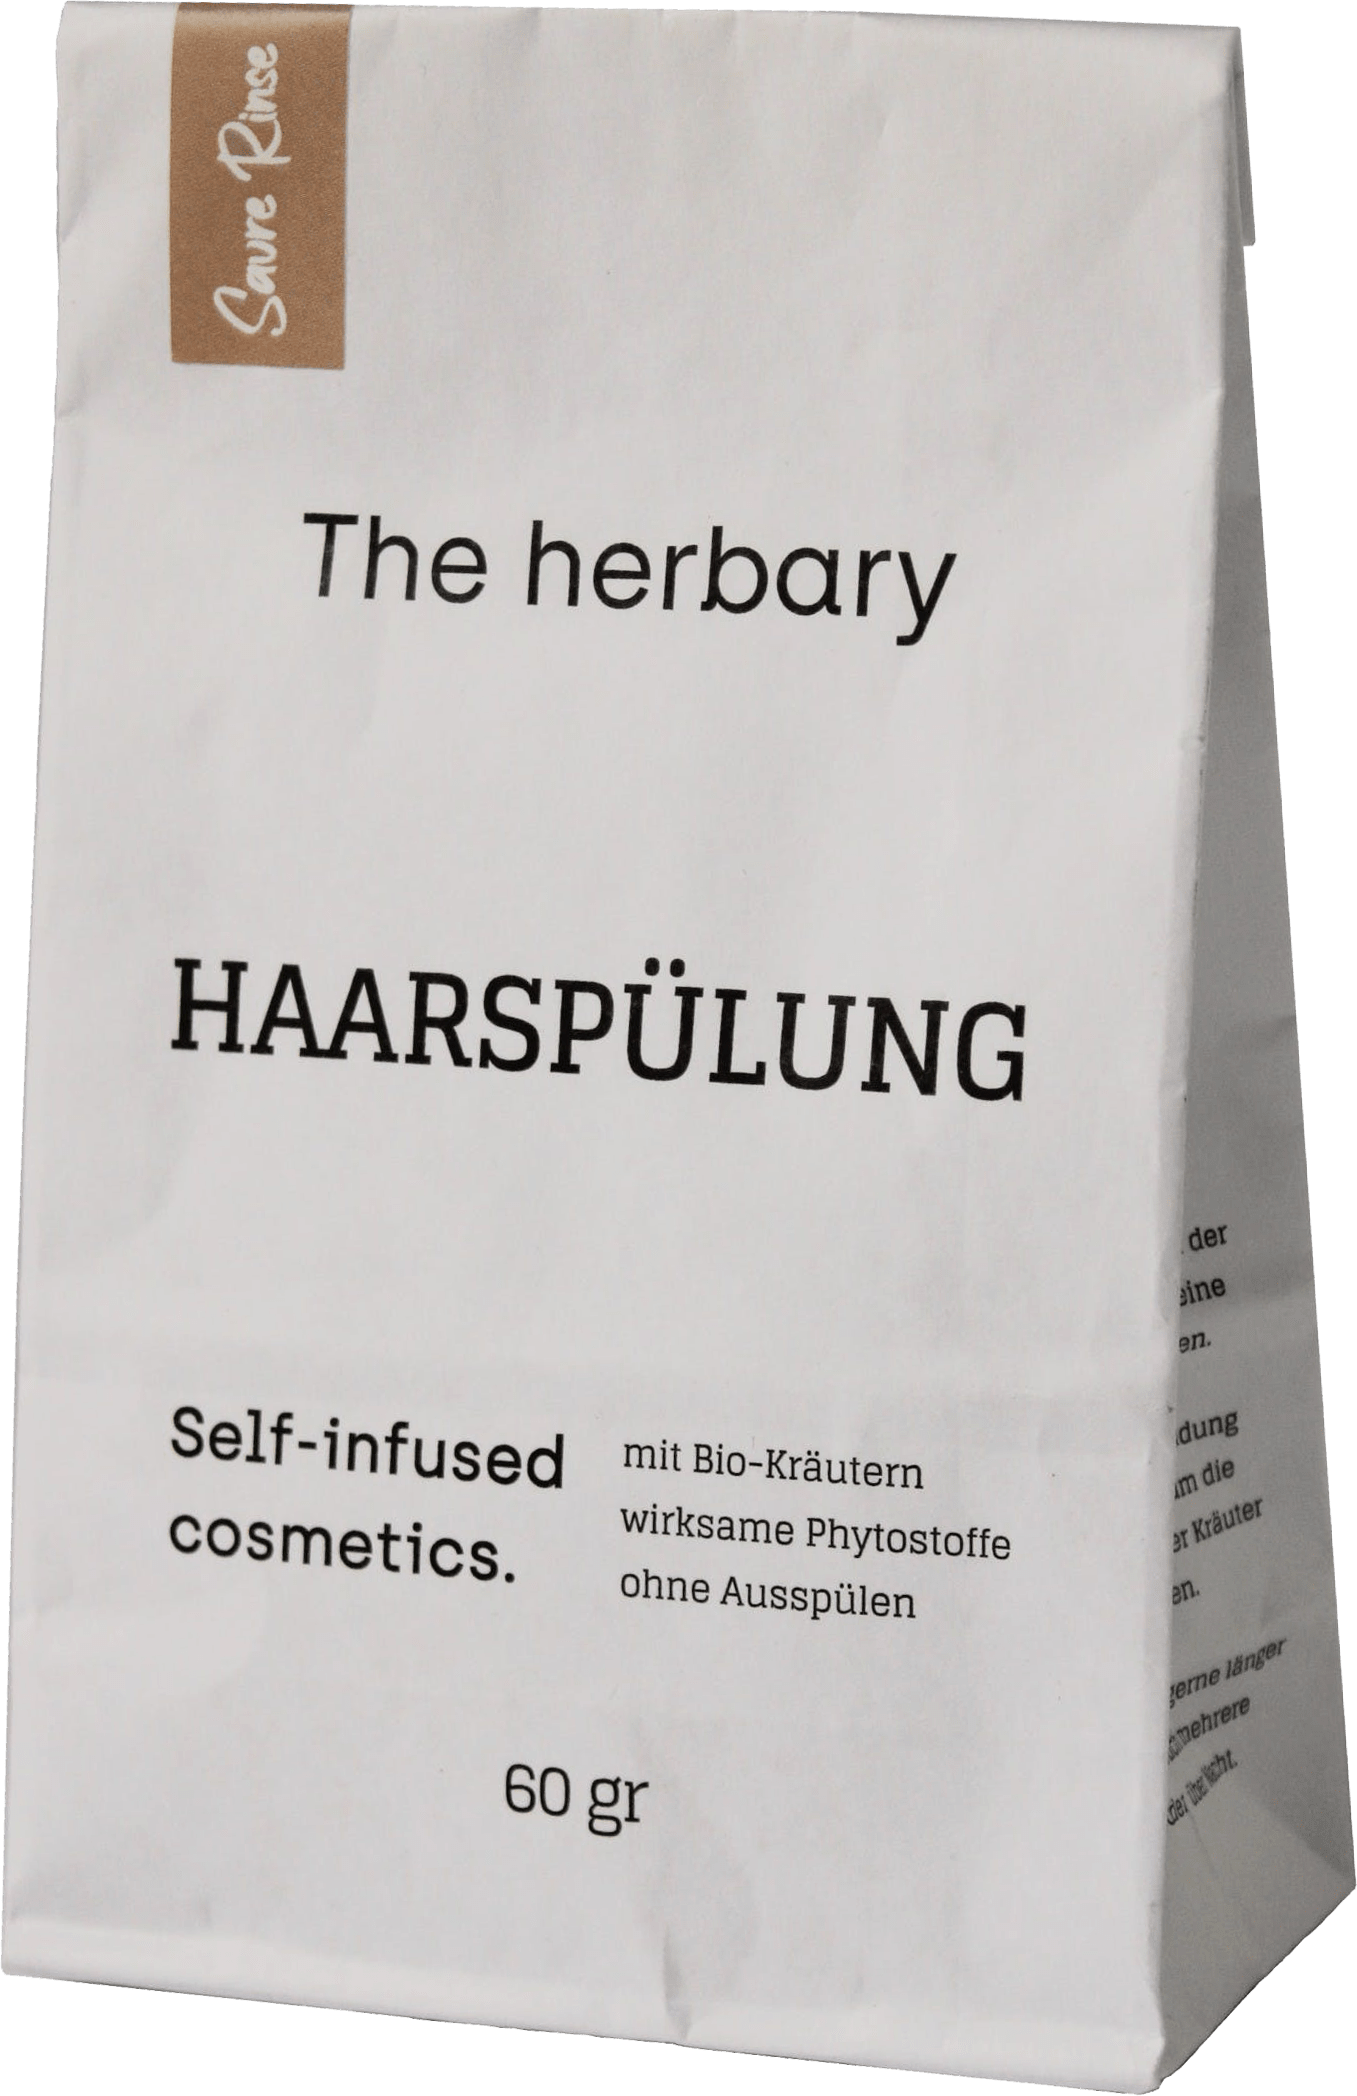 The Herbary Haarspülung - Haartee saure Rinse 